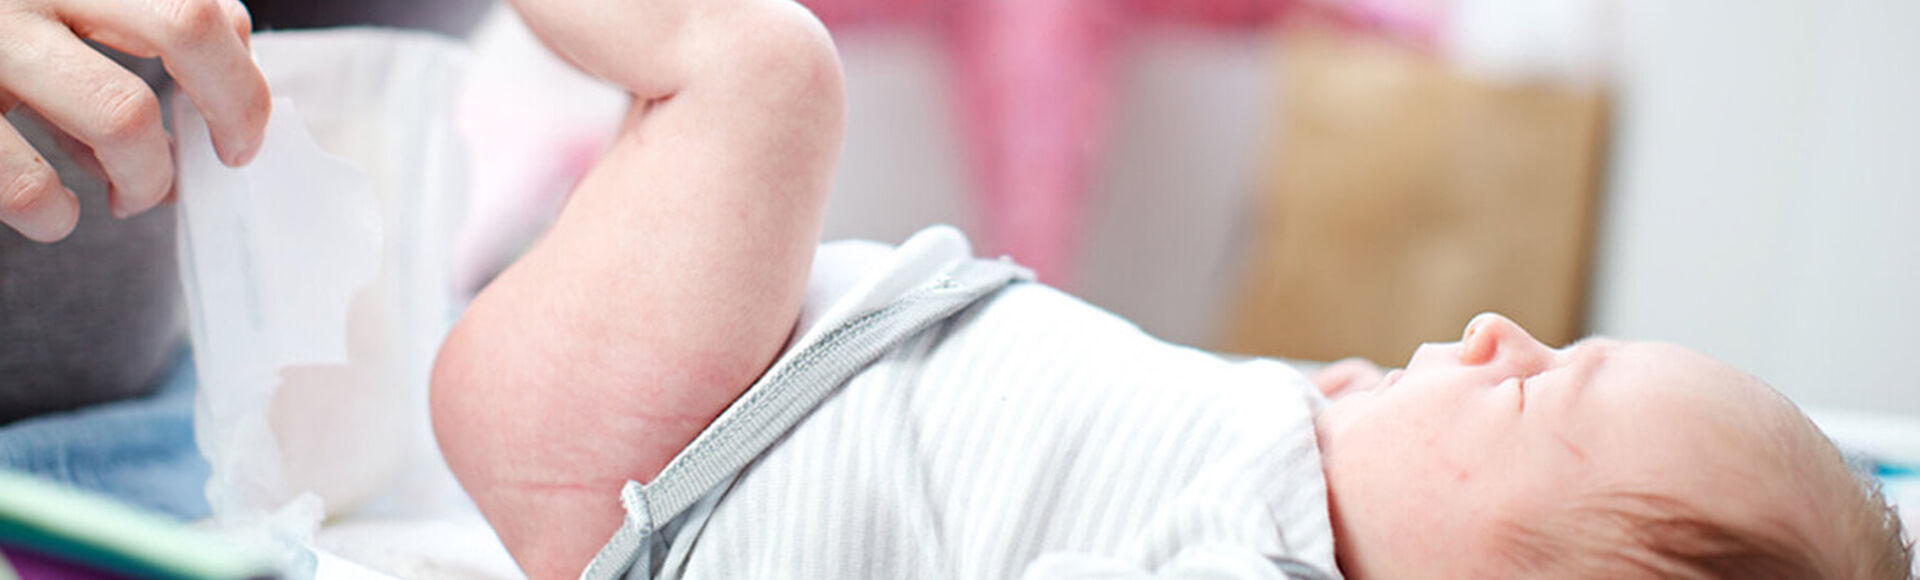 Paso a paso para cambair el pañal de tu bebé | by Huggies Argentina